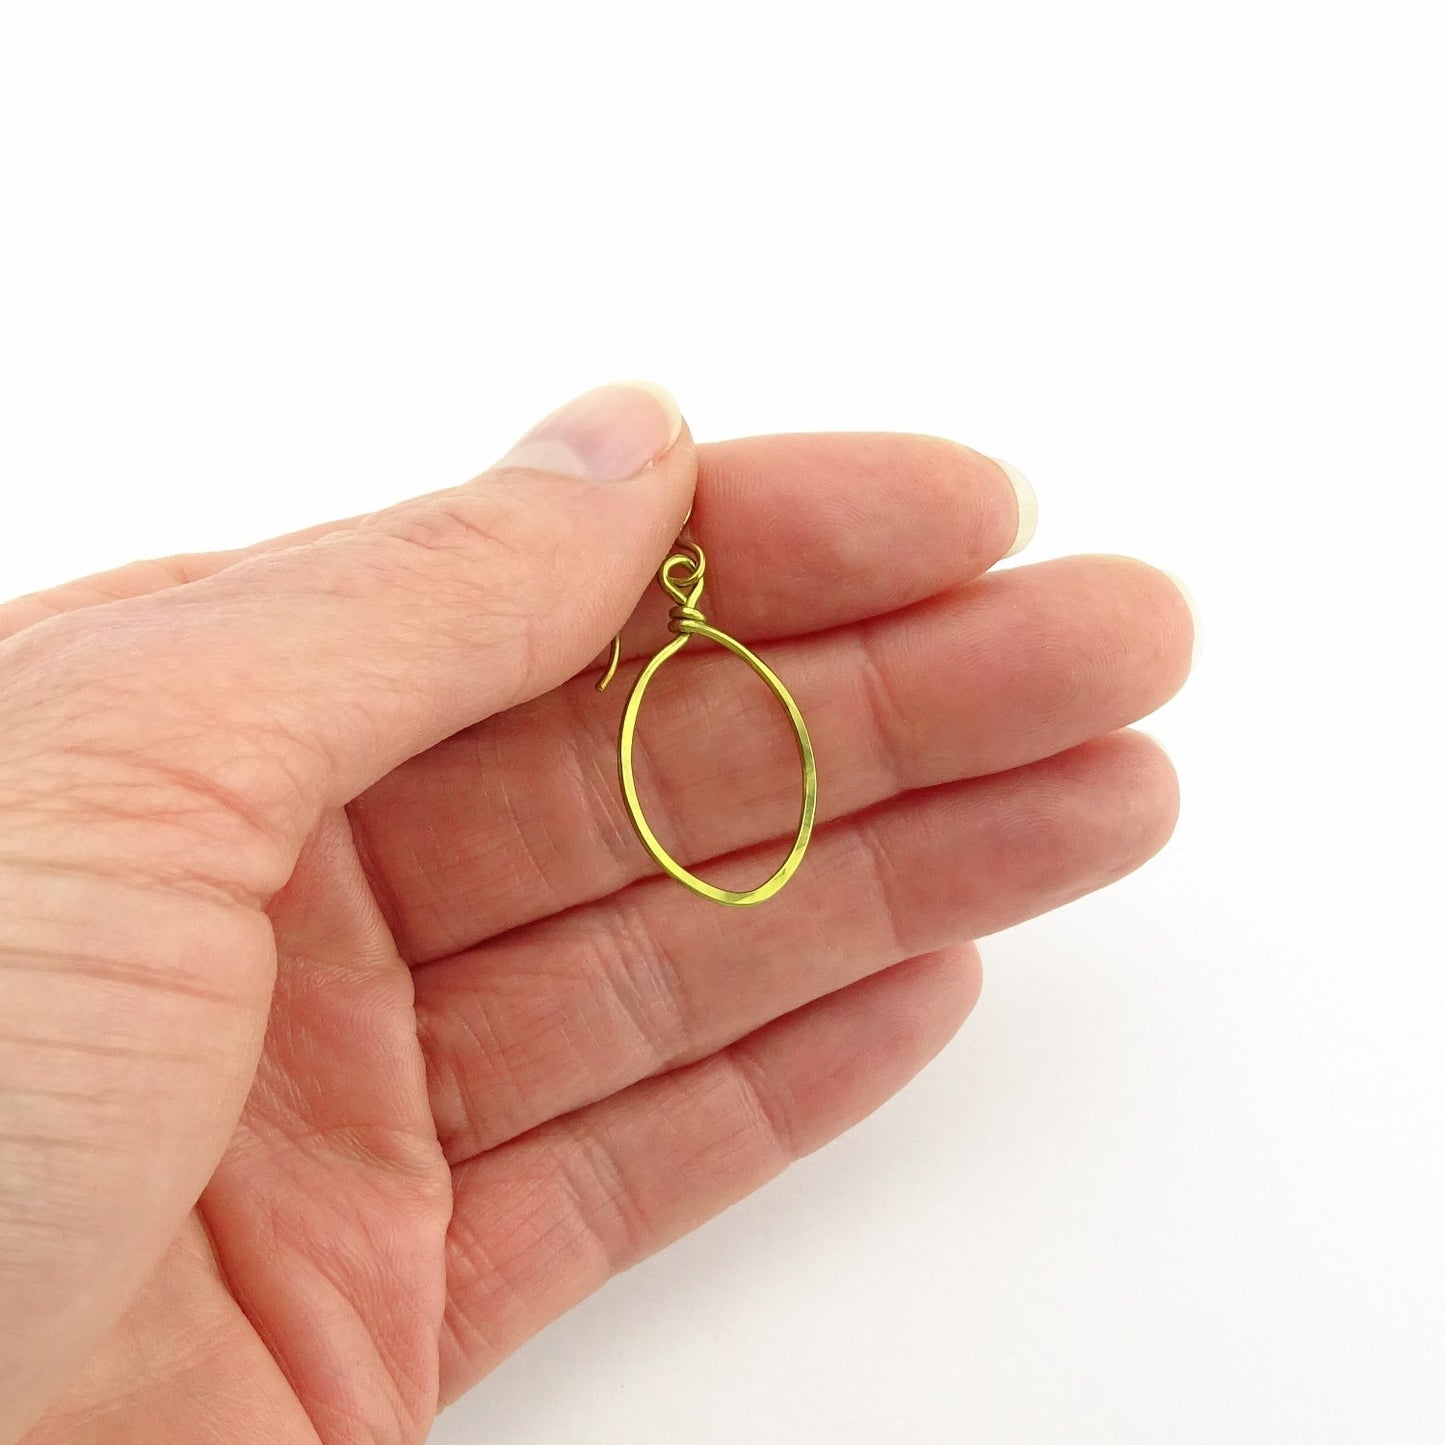 Gold Oval Hoop Niobium Earrings, Hypoallergenic Earrings for Sensitive Ears, Gold Dangle Hoop Nickel Free Earrings, Simple Modern Everyday